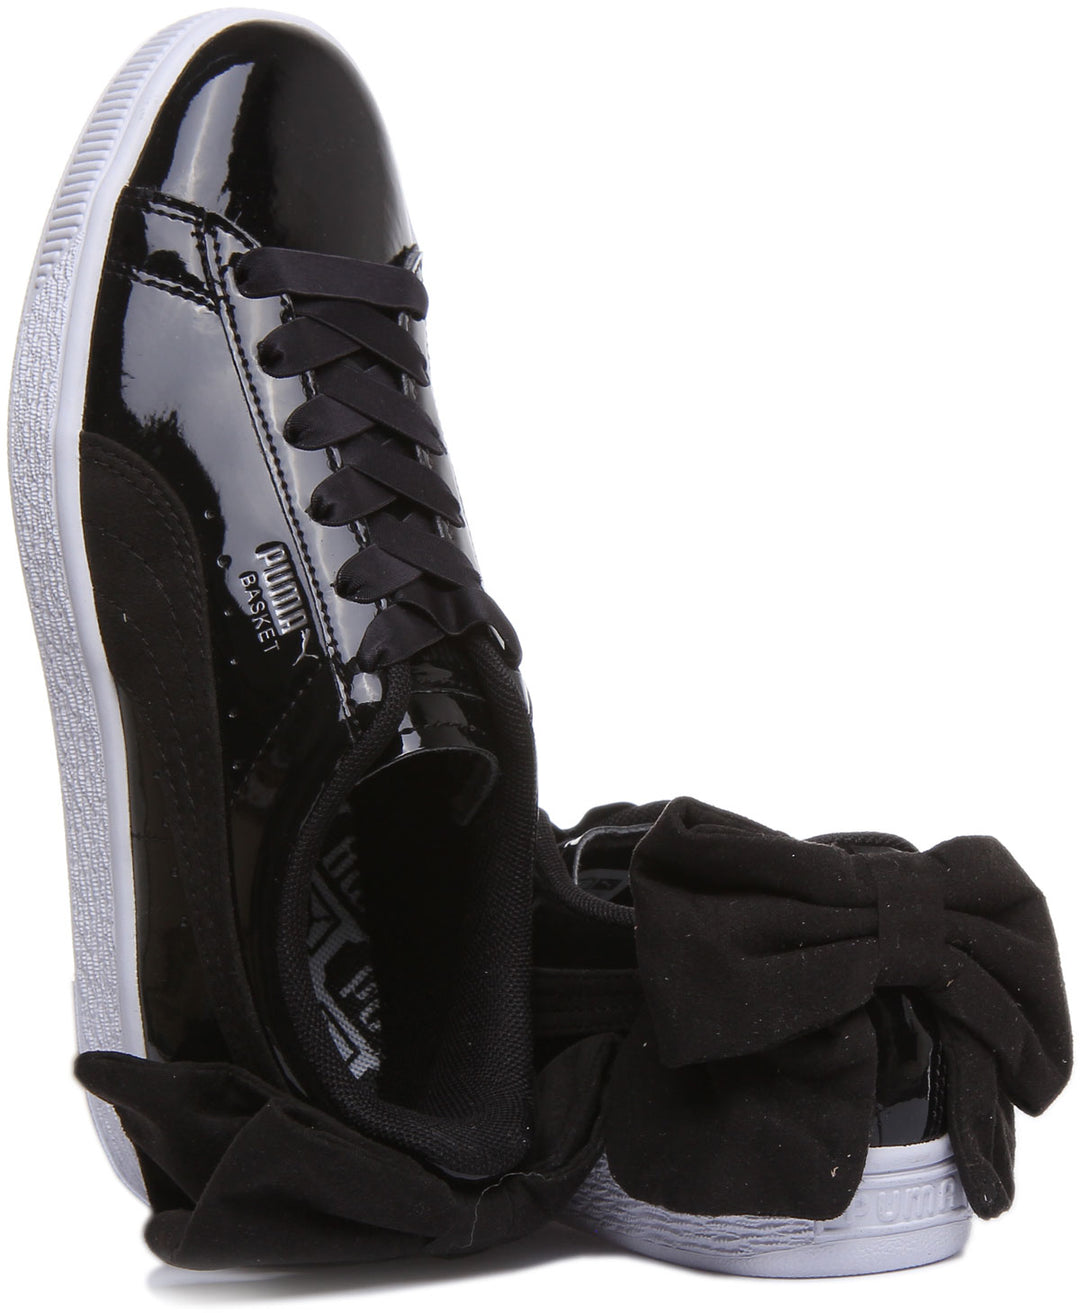 Puma Basket Bow SB Zapatillas de cuero con cordones para mujer en charol negro